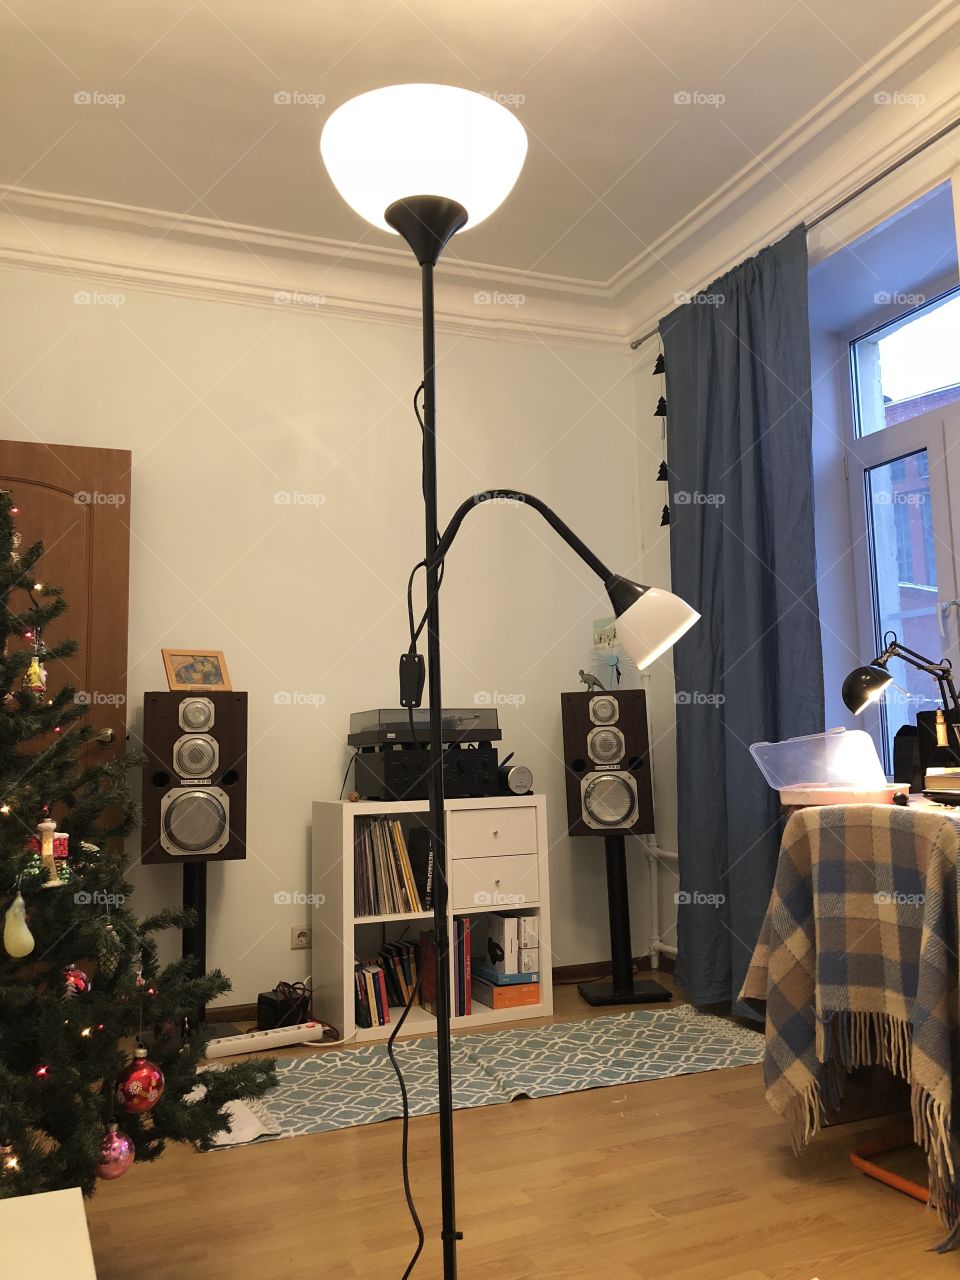 Lamp in room